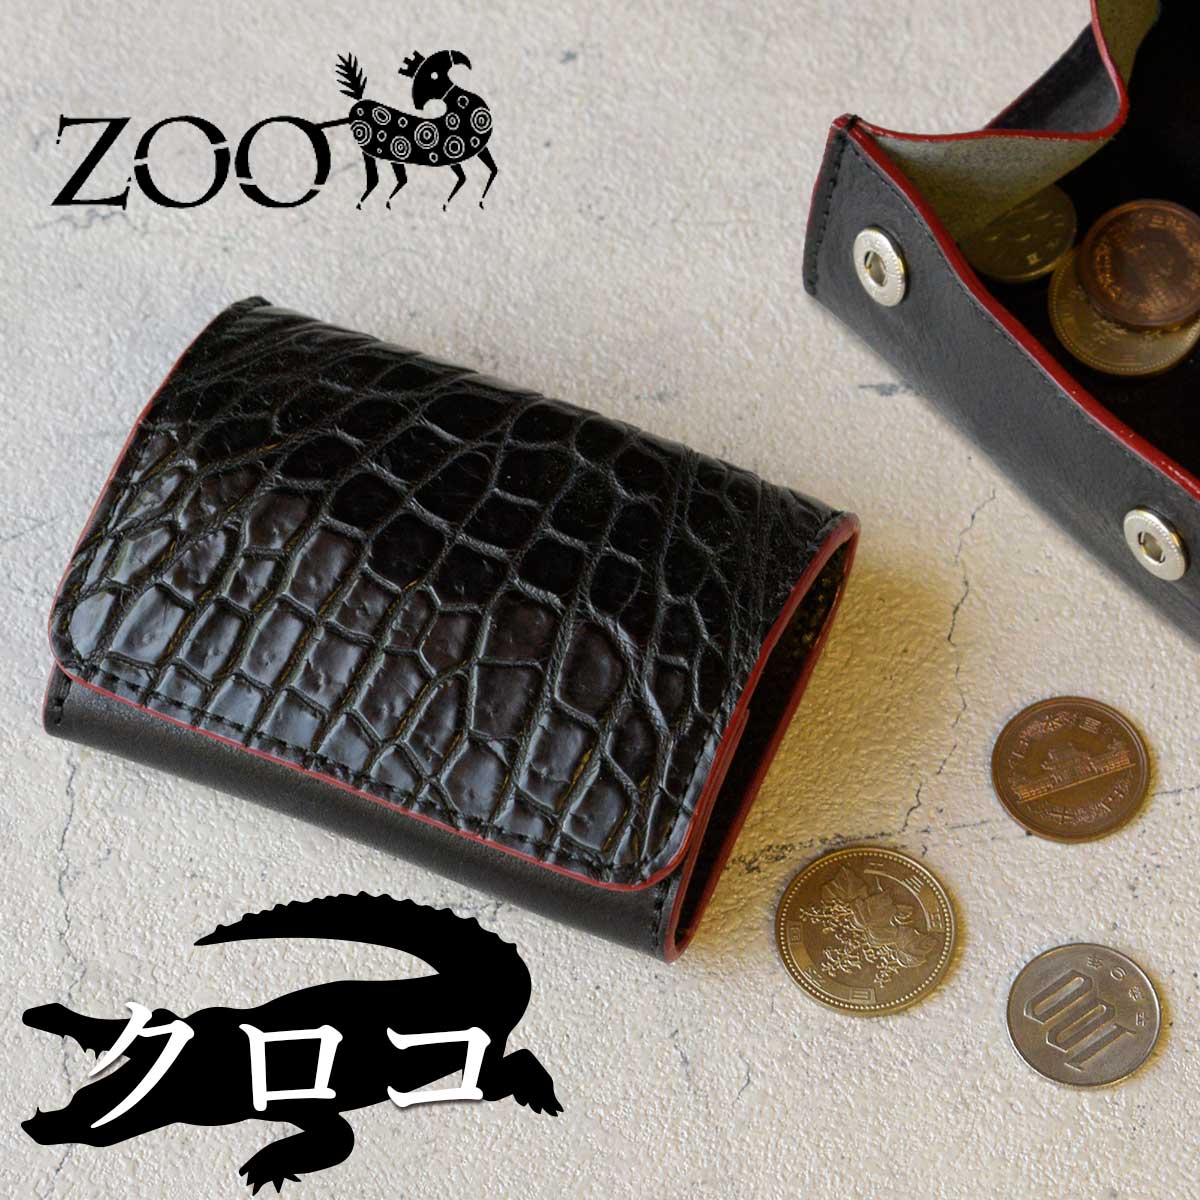 ZOO(ズー) メンズ ワニ革 クロコダイル 小銭入れ コインケース ダックコインケース15 zcc-031 ブラック